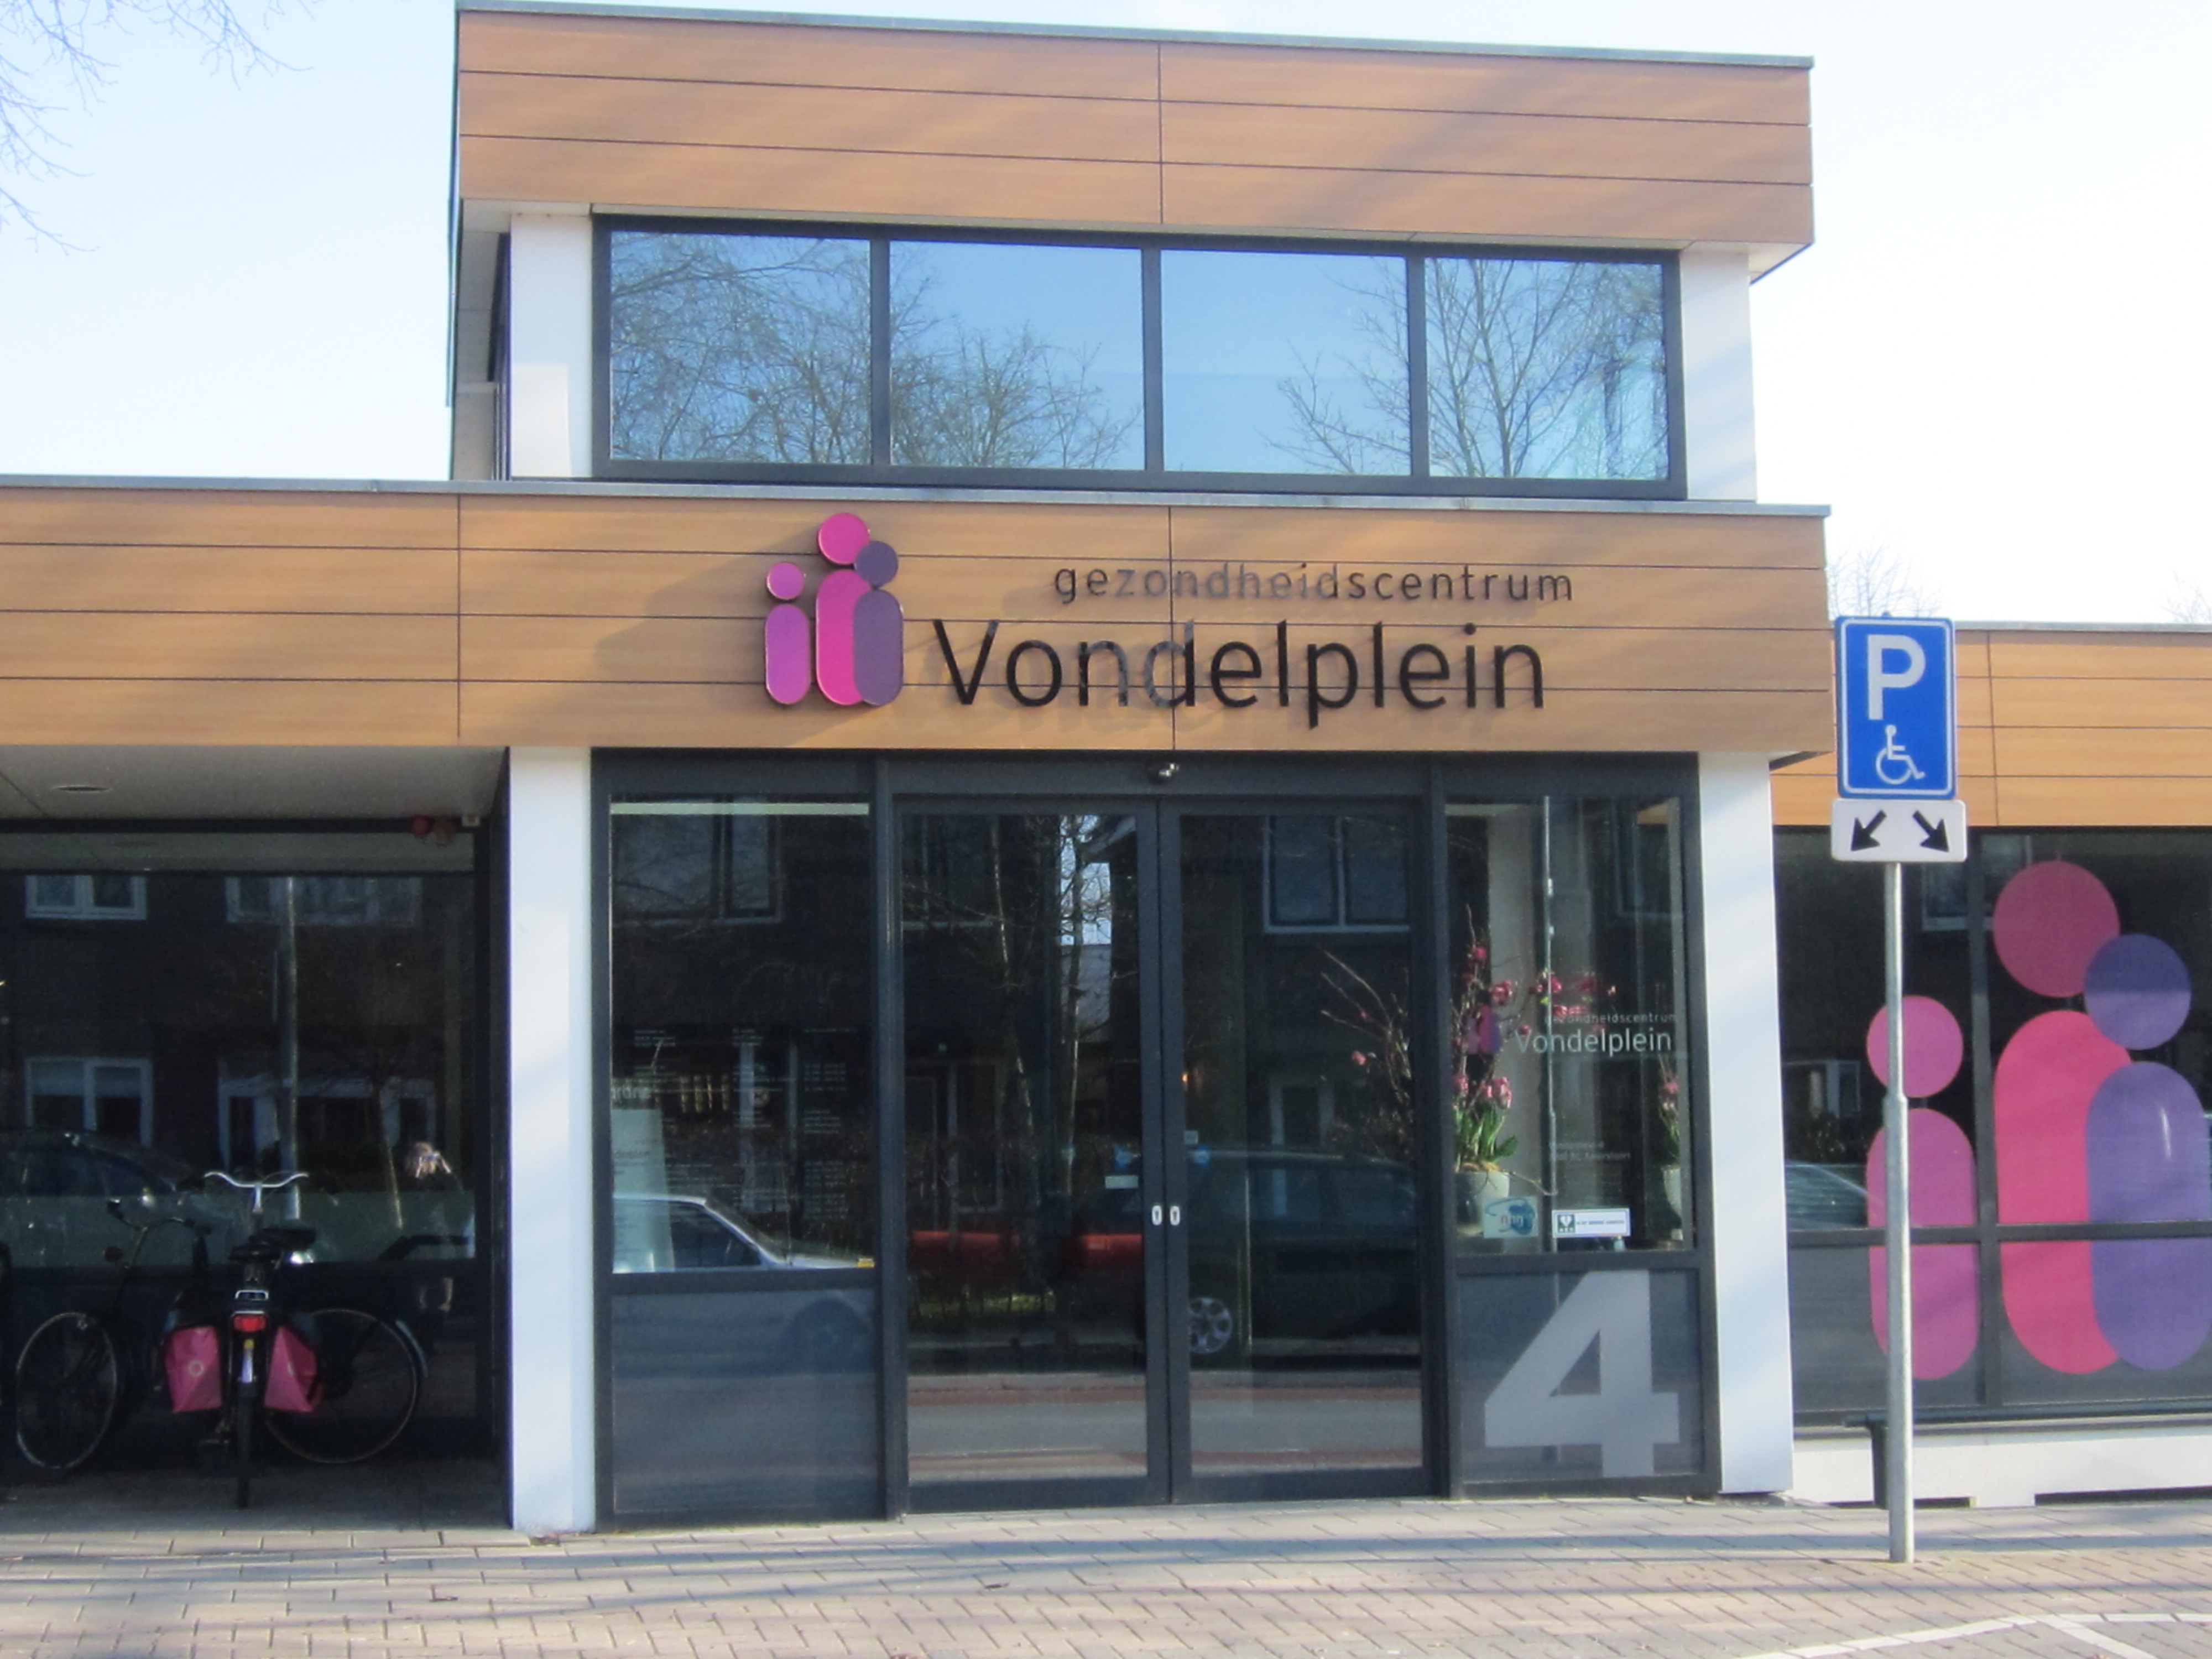 Gezondheidscentrum Vondelplein